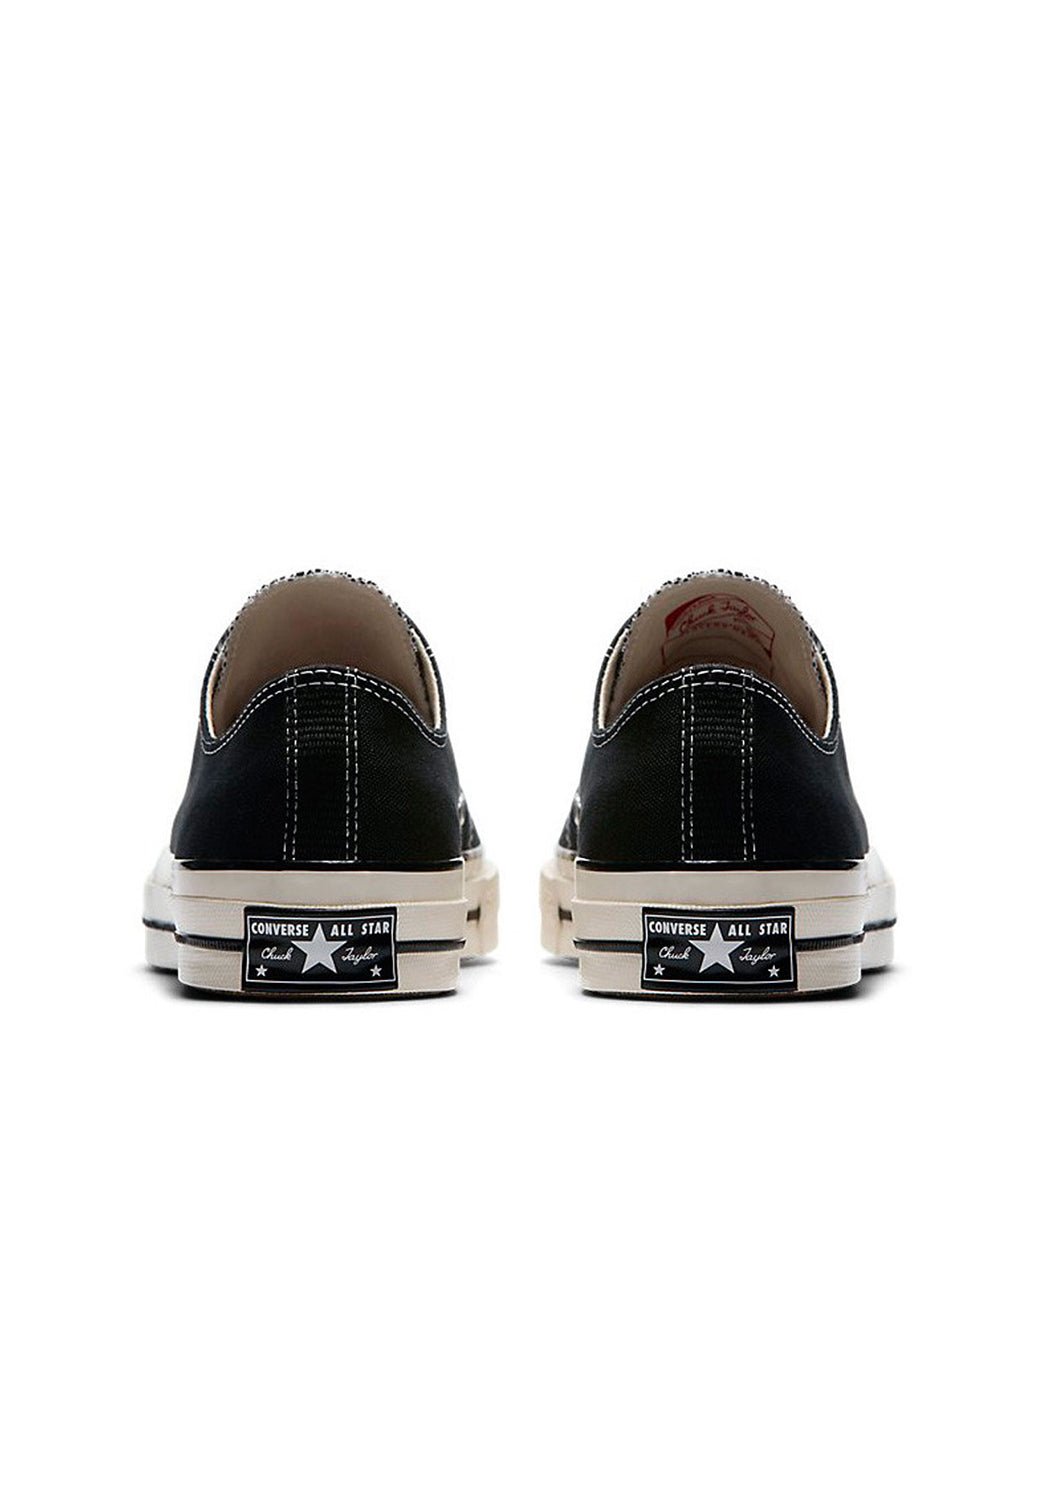 נעלי אולסטאר Chuck 70 נמוכות בצבע שחור לנשים - Converse